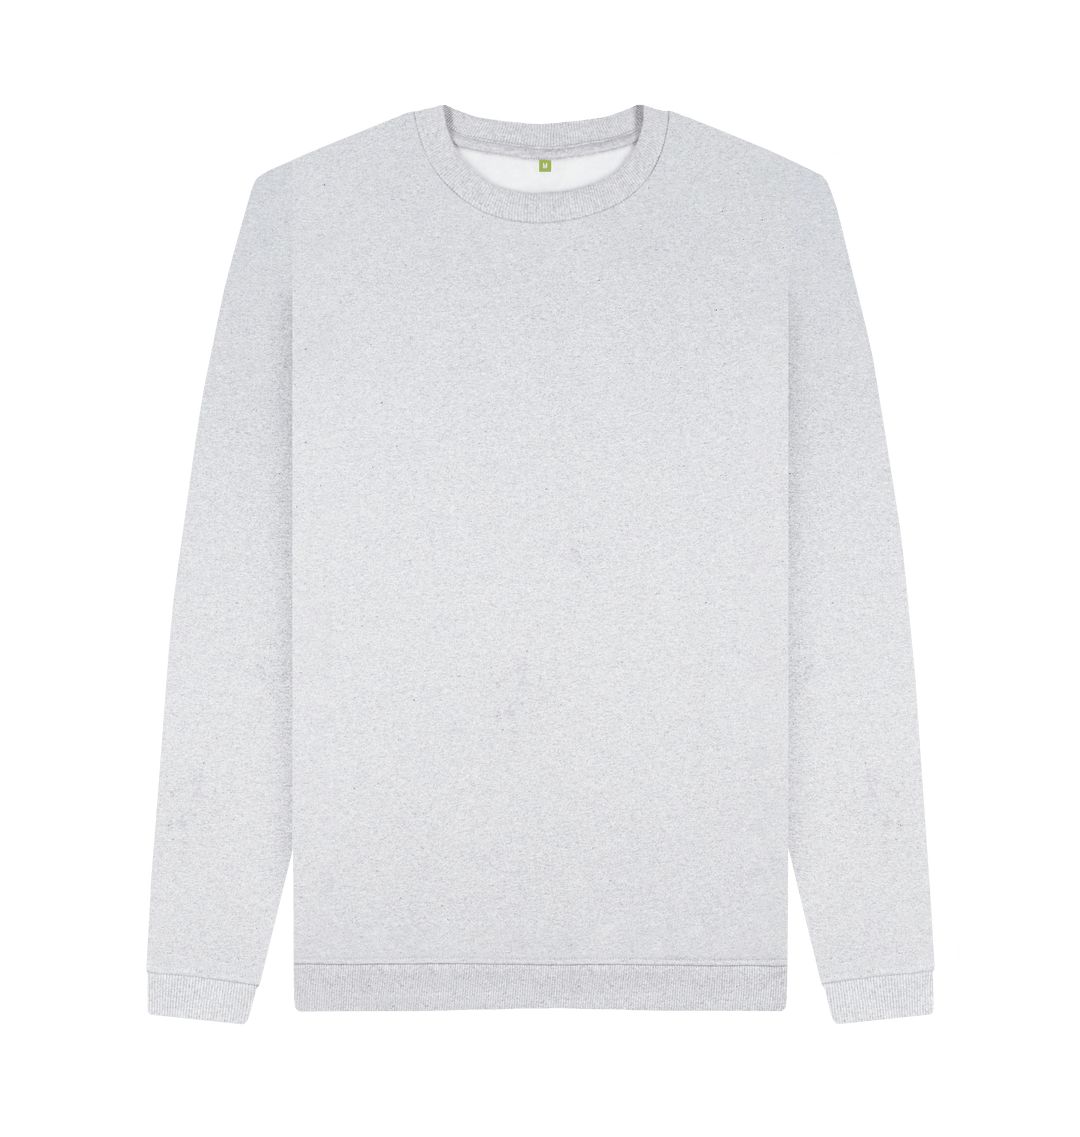 Grey Men's sustainable essential sweatshirt